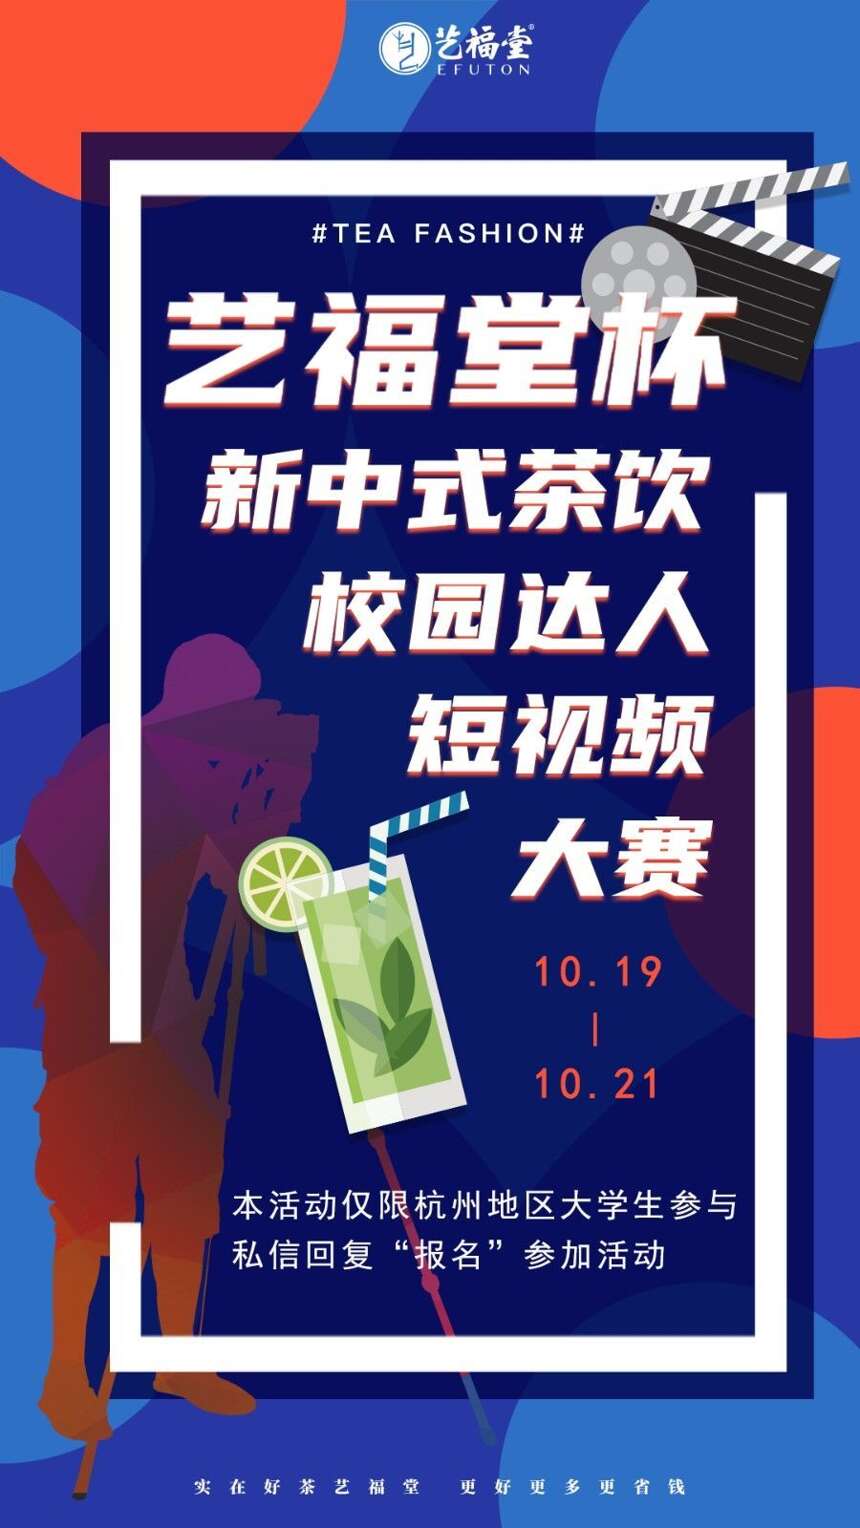 祝贺艺福堂茶业集团2020双十一总销售额突破2750万元